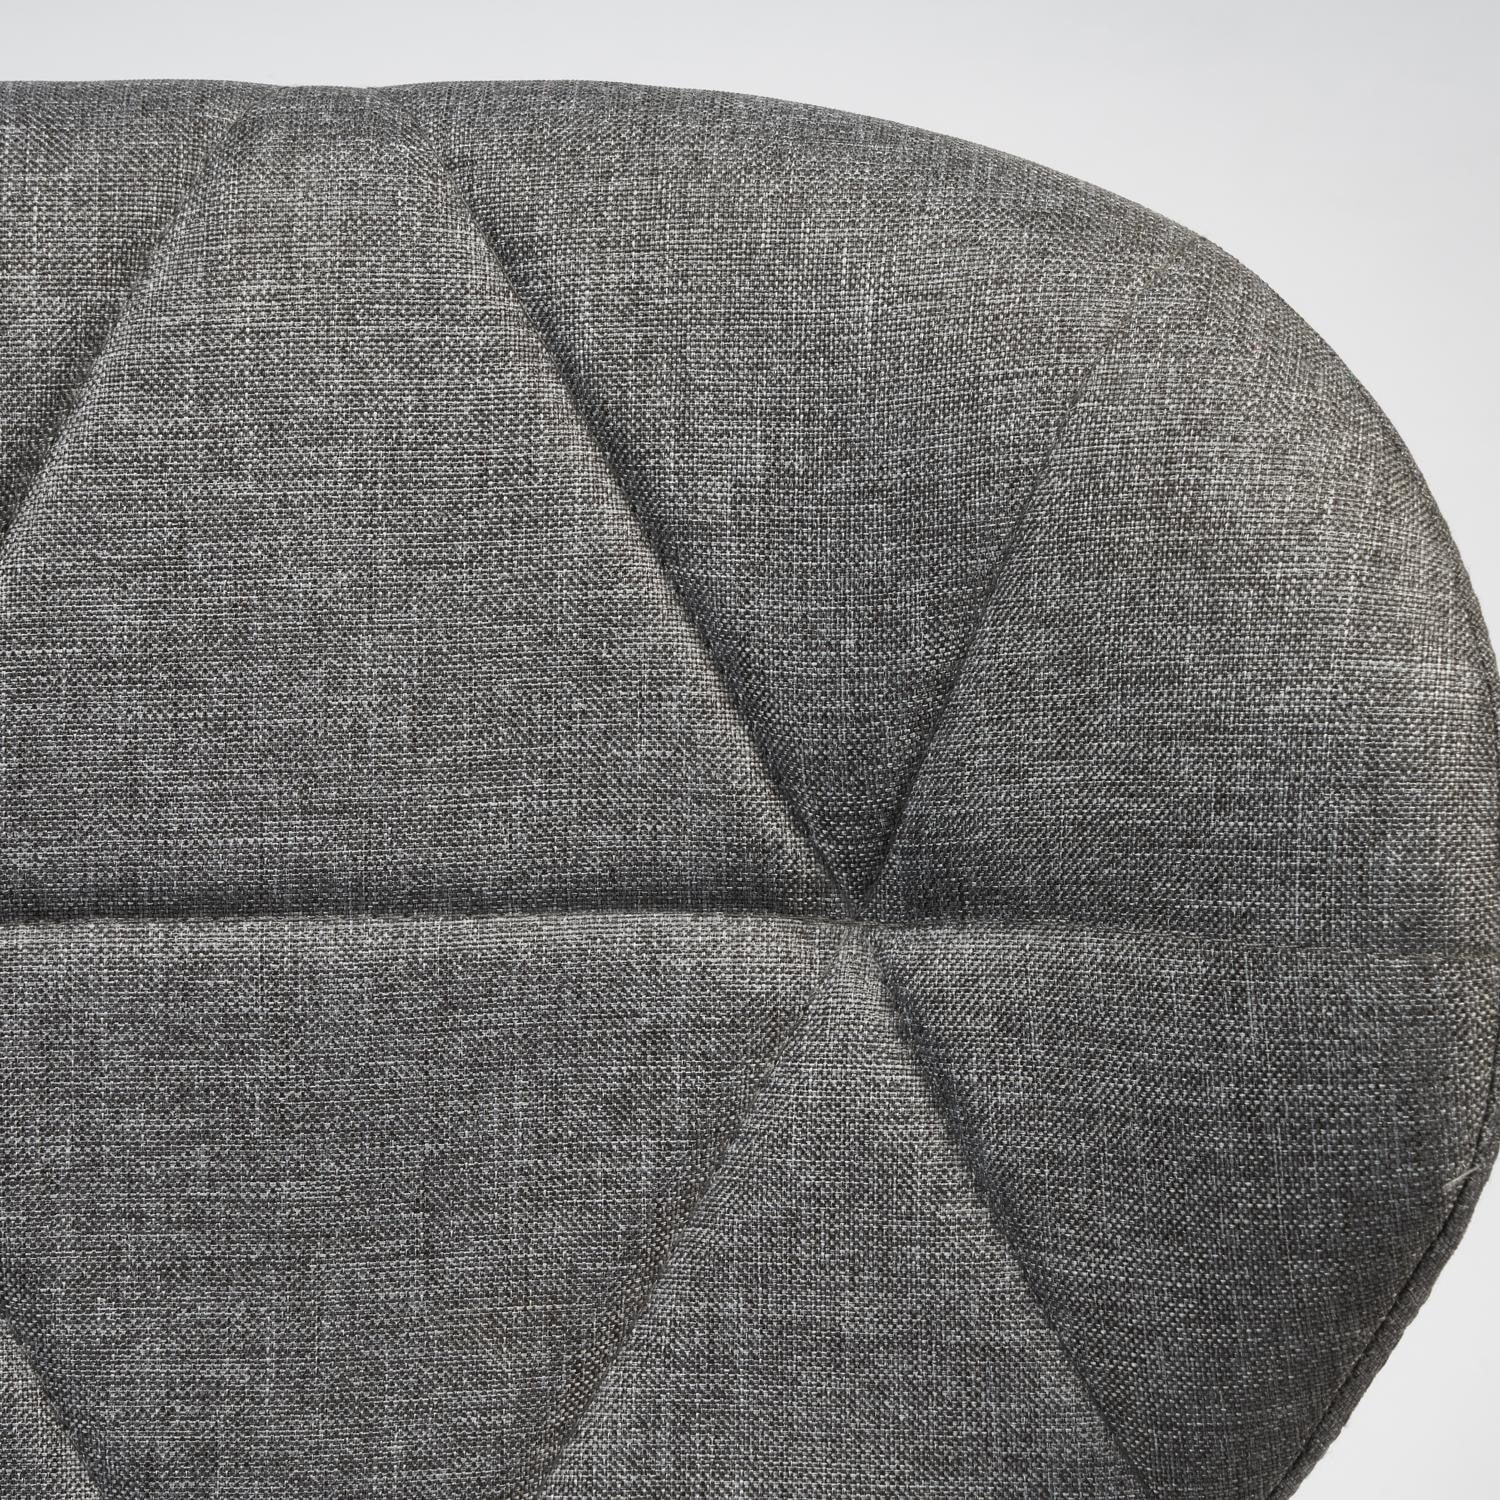 Офисное кресло Recaro (mod.007) металл, ткань, 45x74+10см, серый